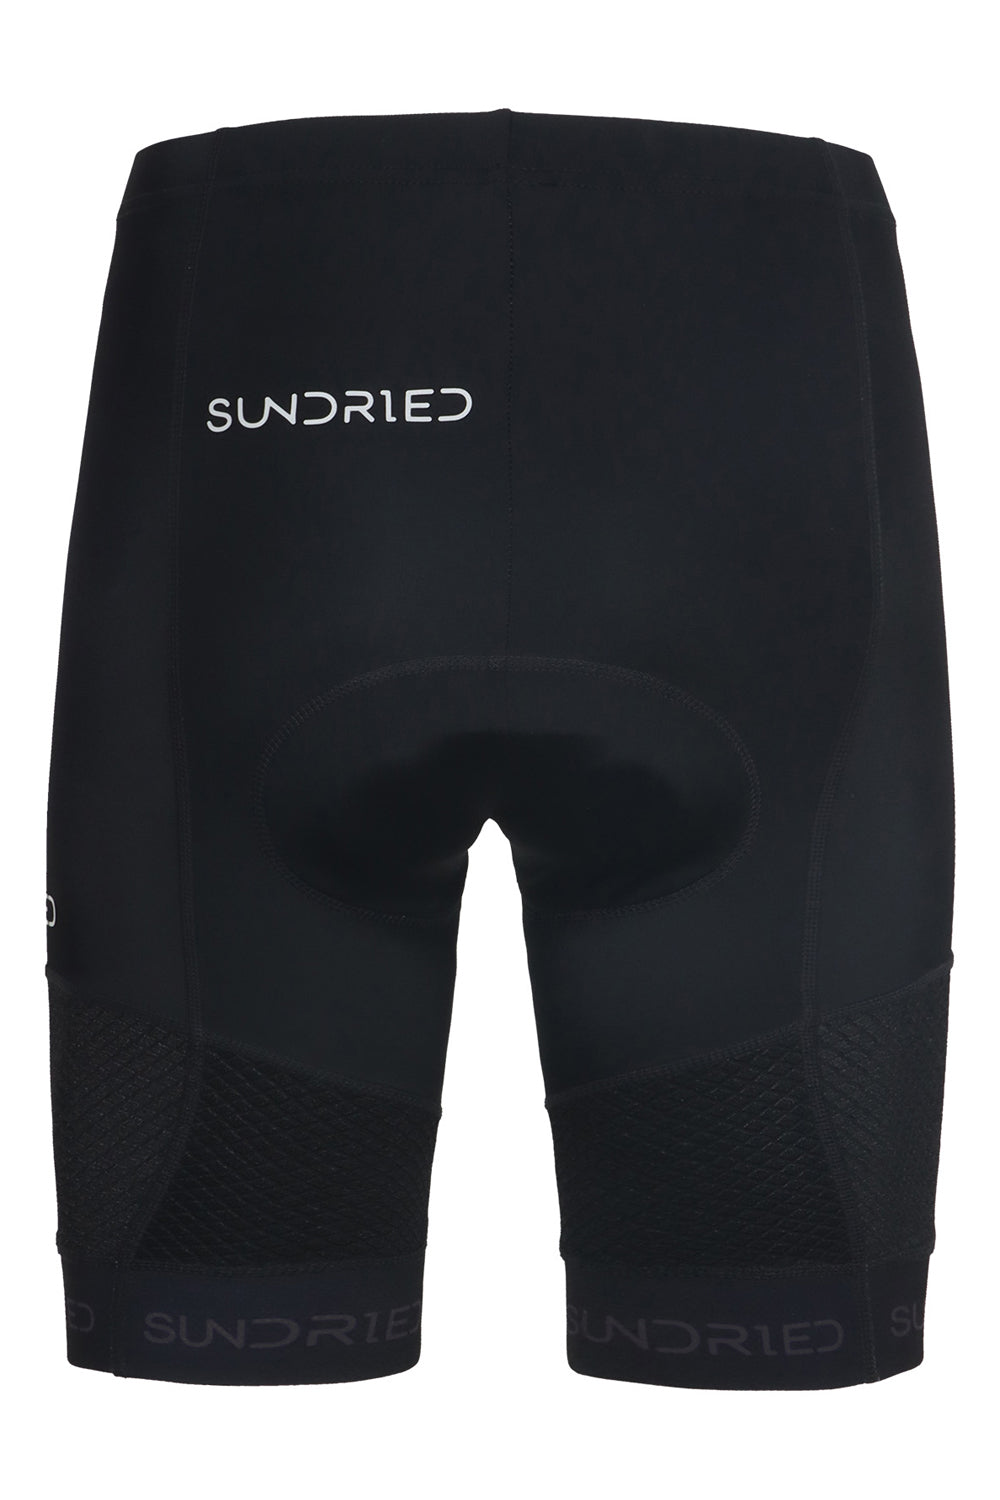 Sundried Men's Padded Training Shorts Shorts Activewear